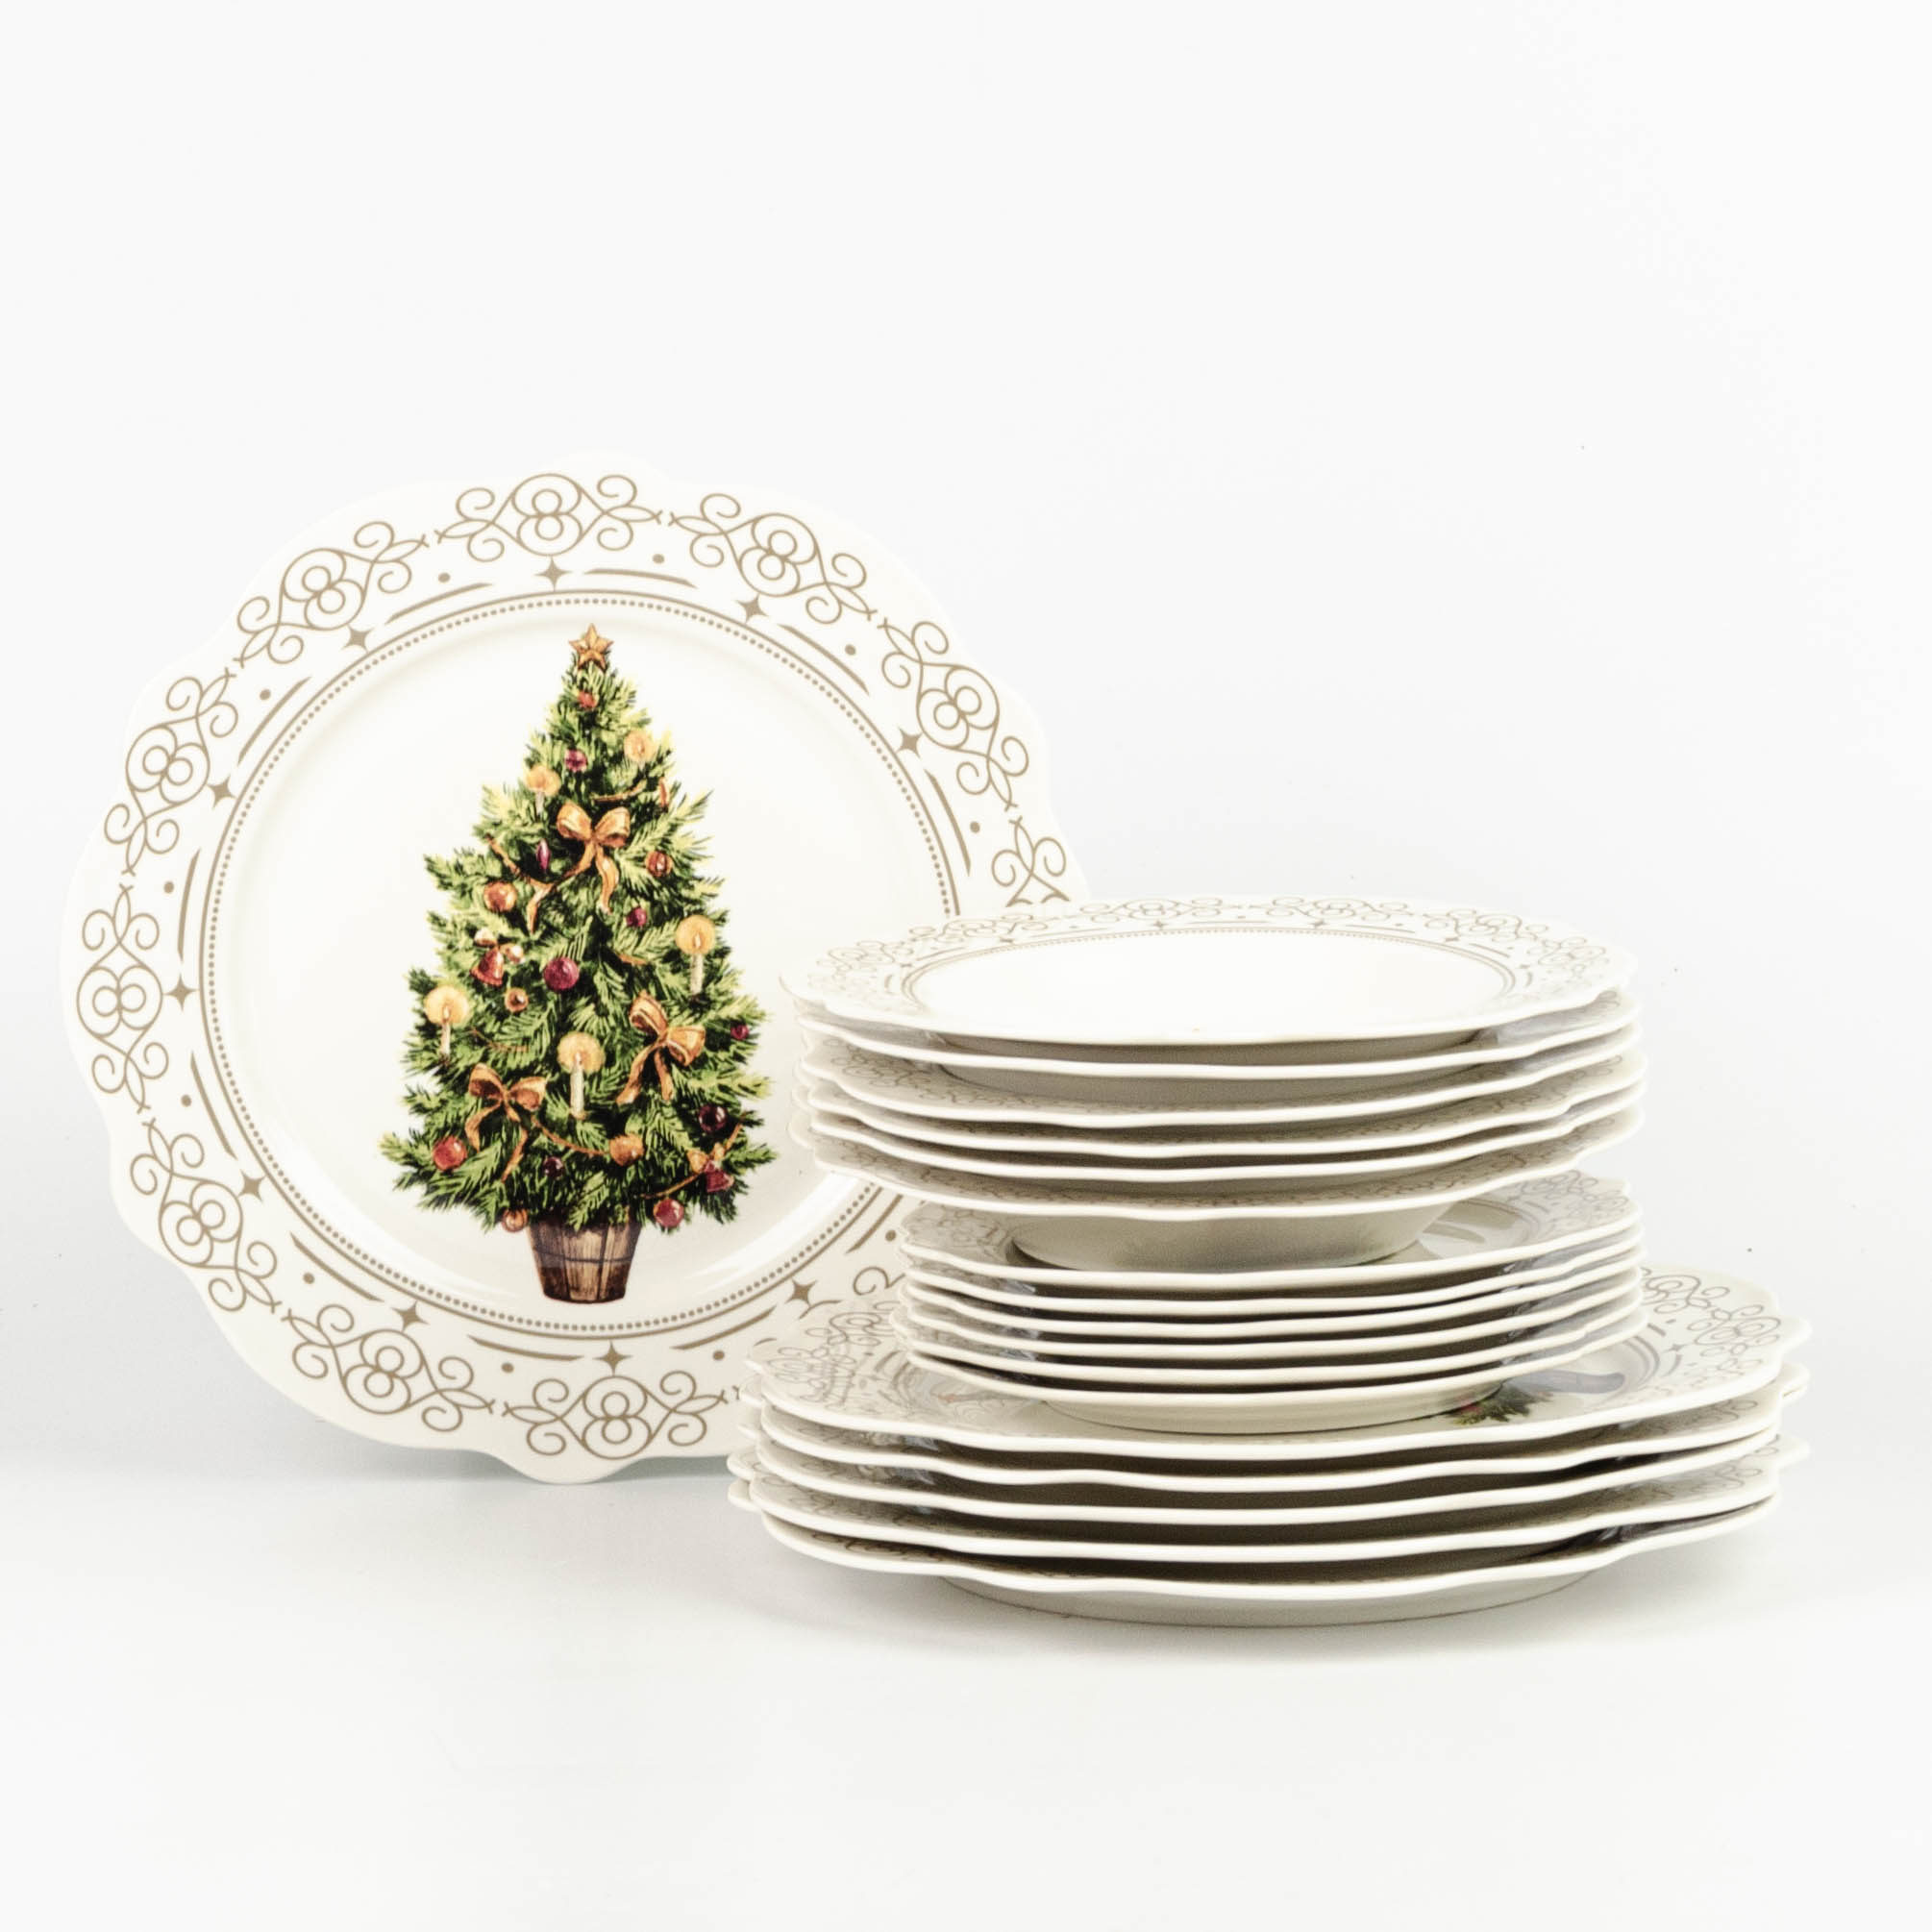 Servizio 18 piatti Elegance Xmas bianco in porcellana stile natalizio